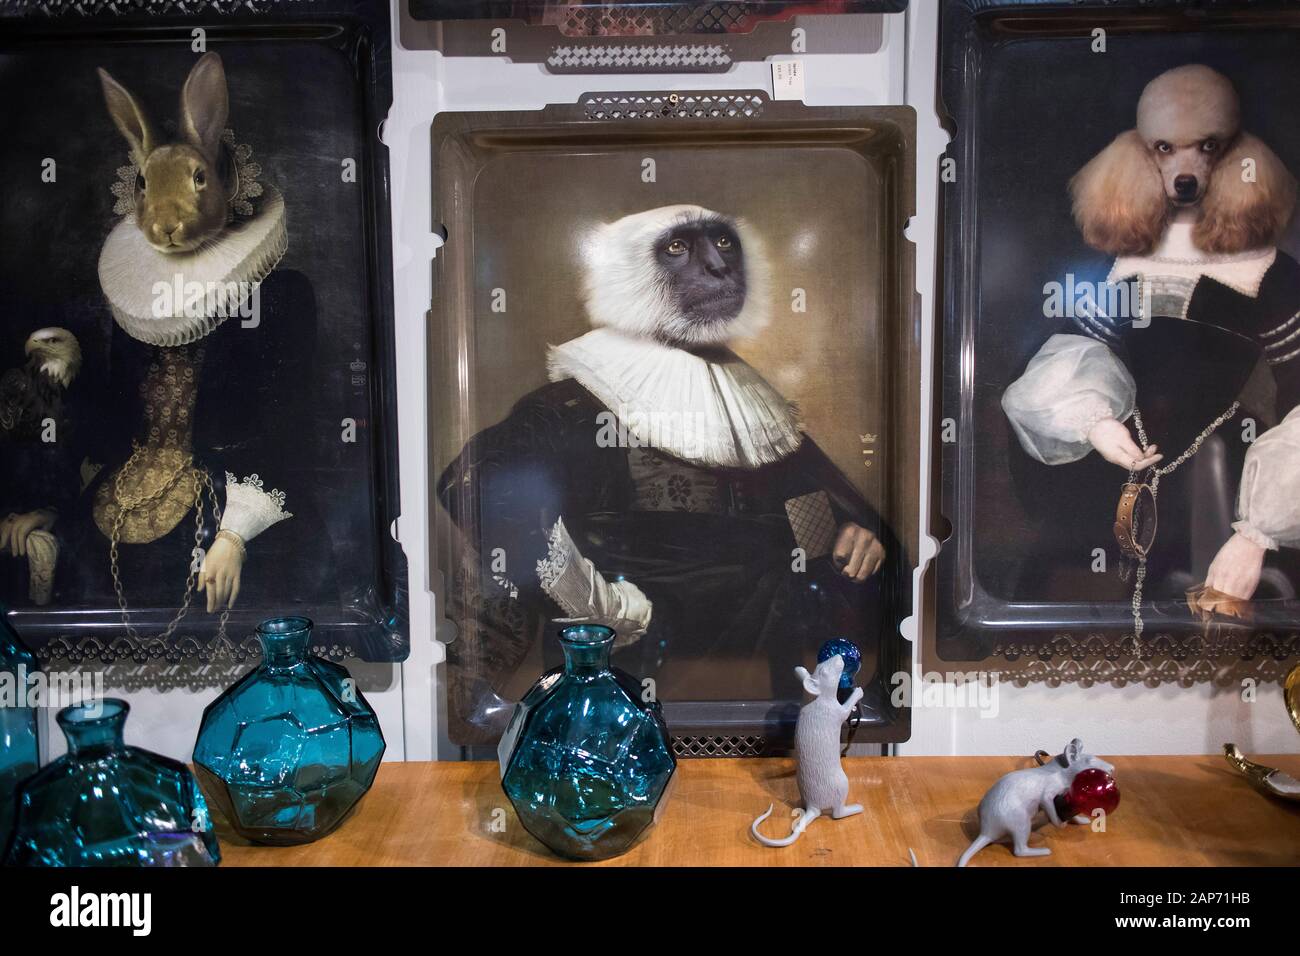 Londres, Reino Unido - 23 de diciembre de 2019, el interior de la tienda Liberty en Regent Street. Pinturas con retratos de monos animales exóticos pintados como portra Foto de stock